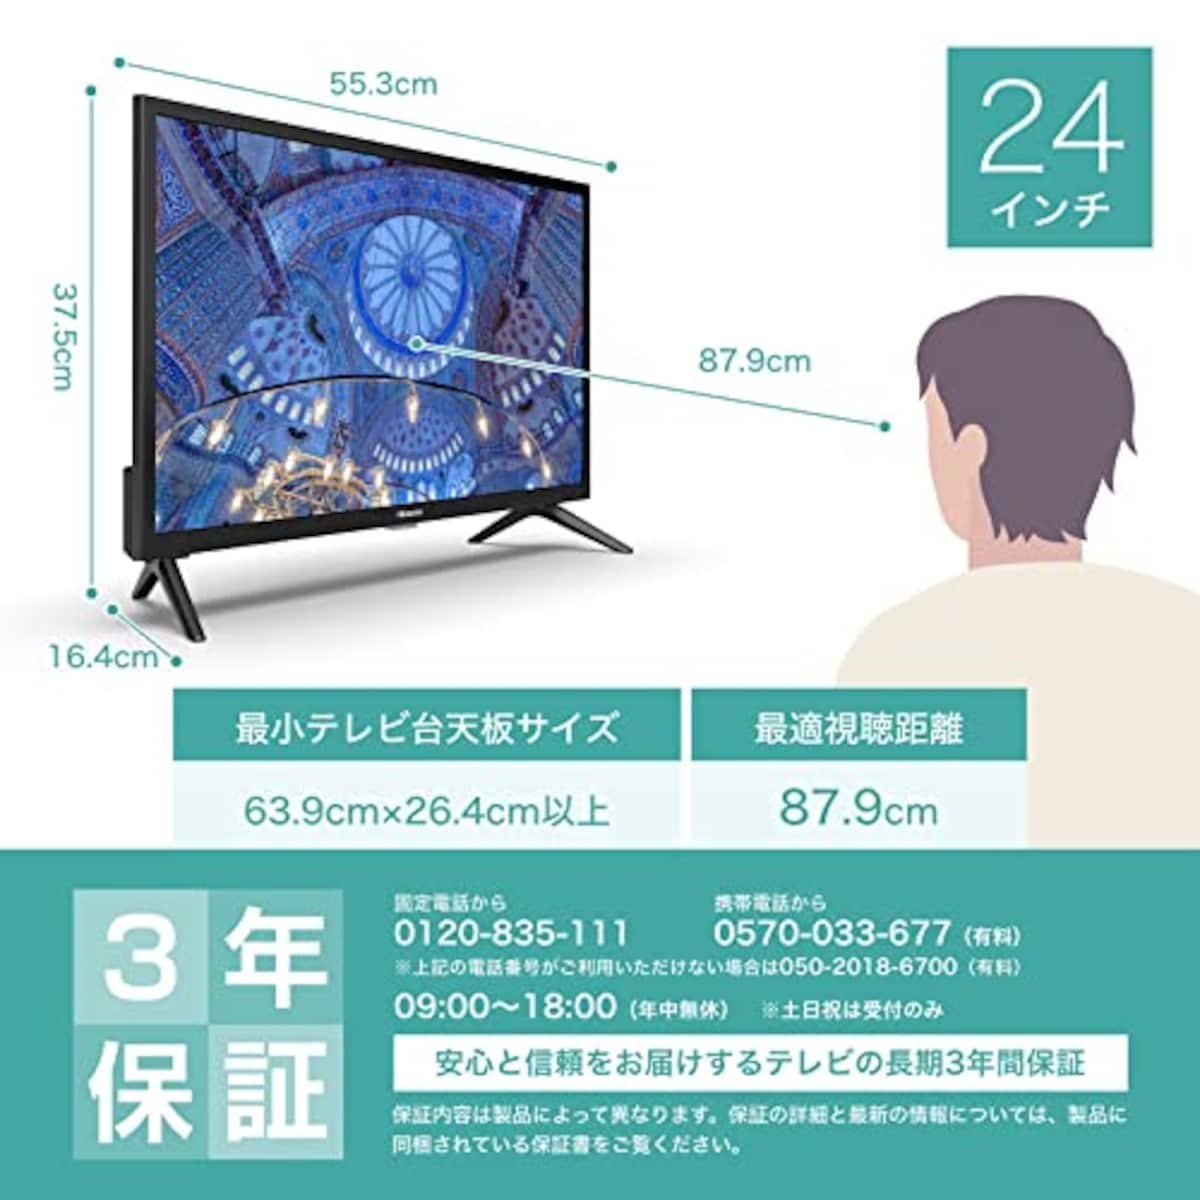  ハイセンス 24V型 ハイビジョン 液晶 テレビ 24A40H ネット動画対応 VAパネル 3年保証 2022年モデル ブラック画像2 